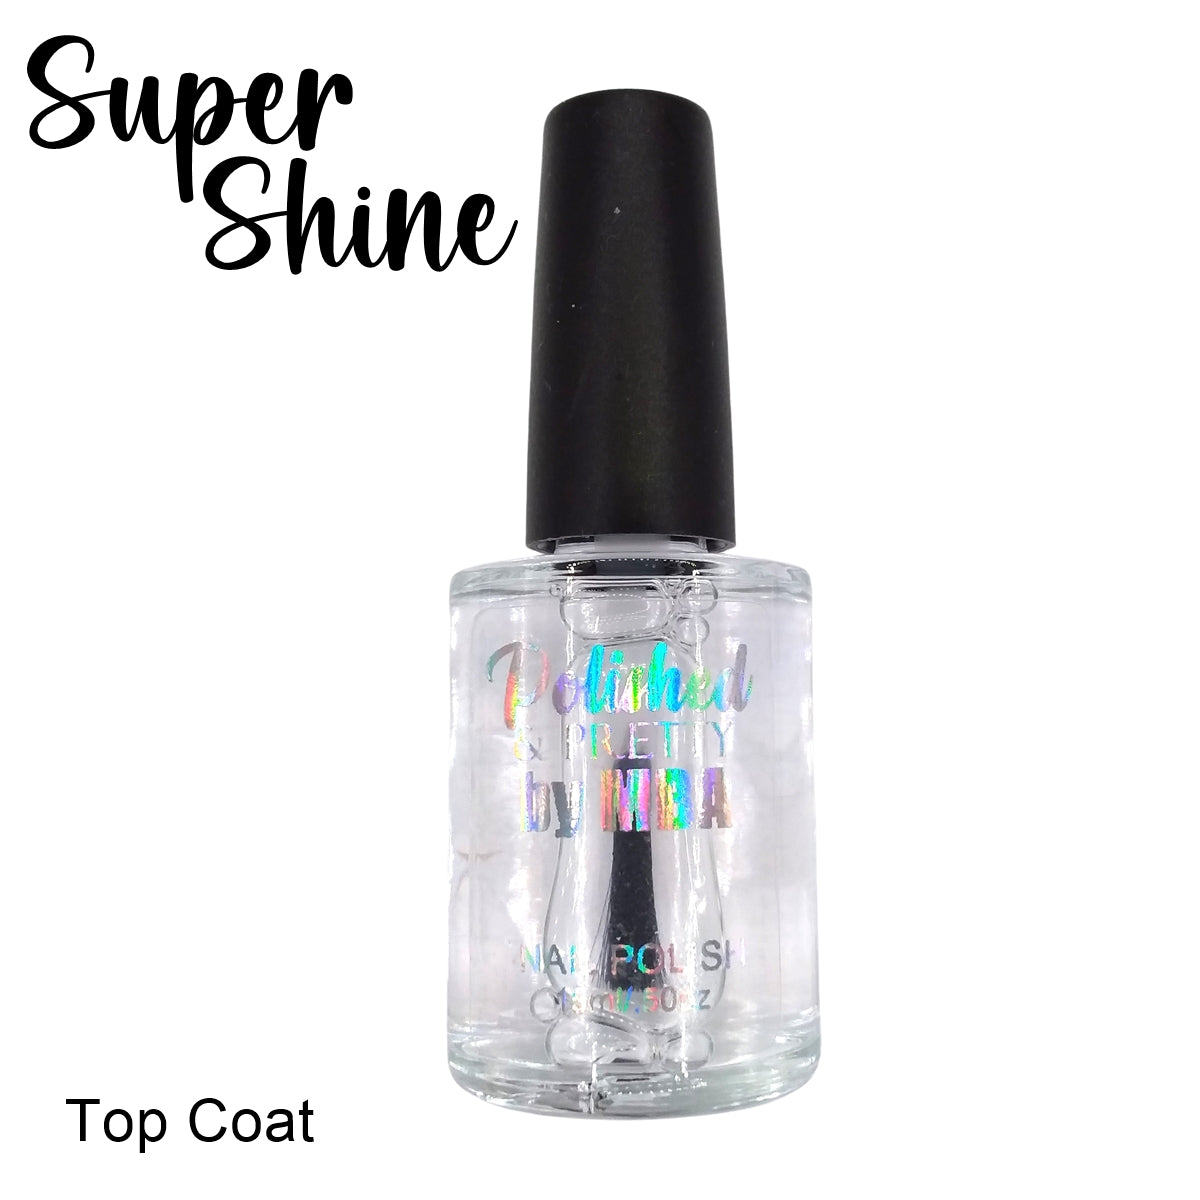 Super Shine-Nail Polish Top Coat Large 15ml